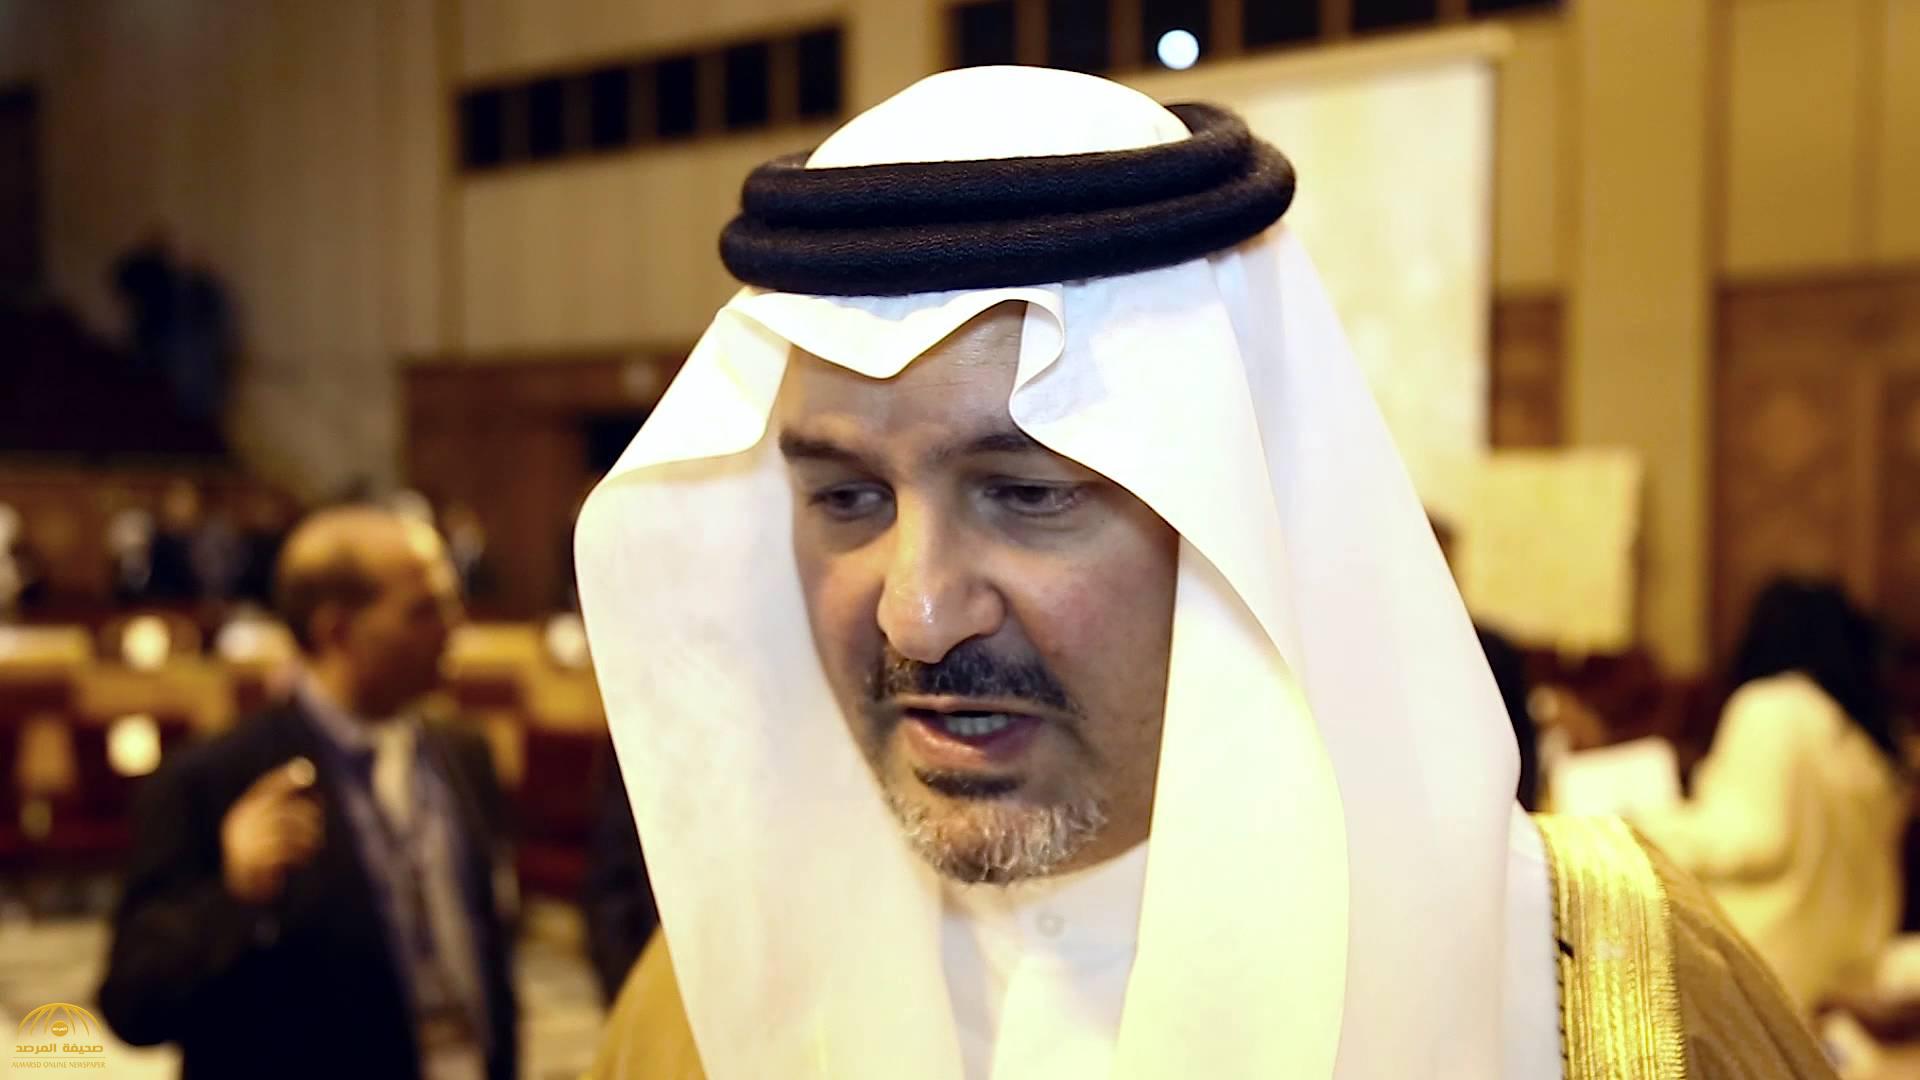 سلطان بن خالد الفيصل آل سعود